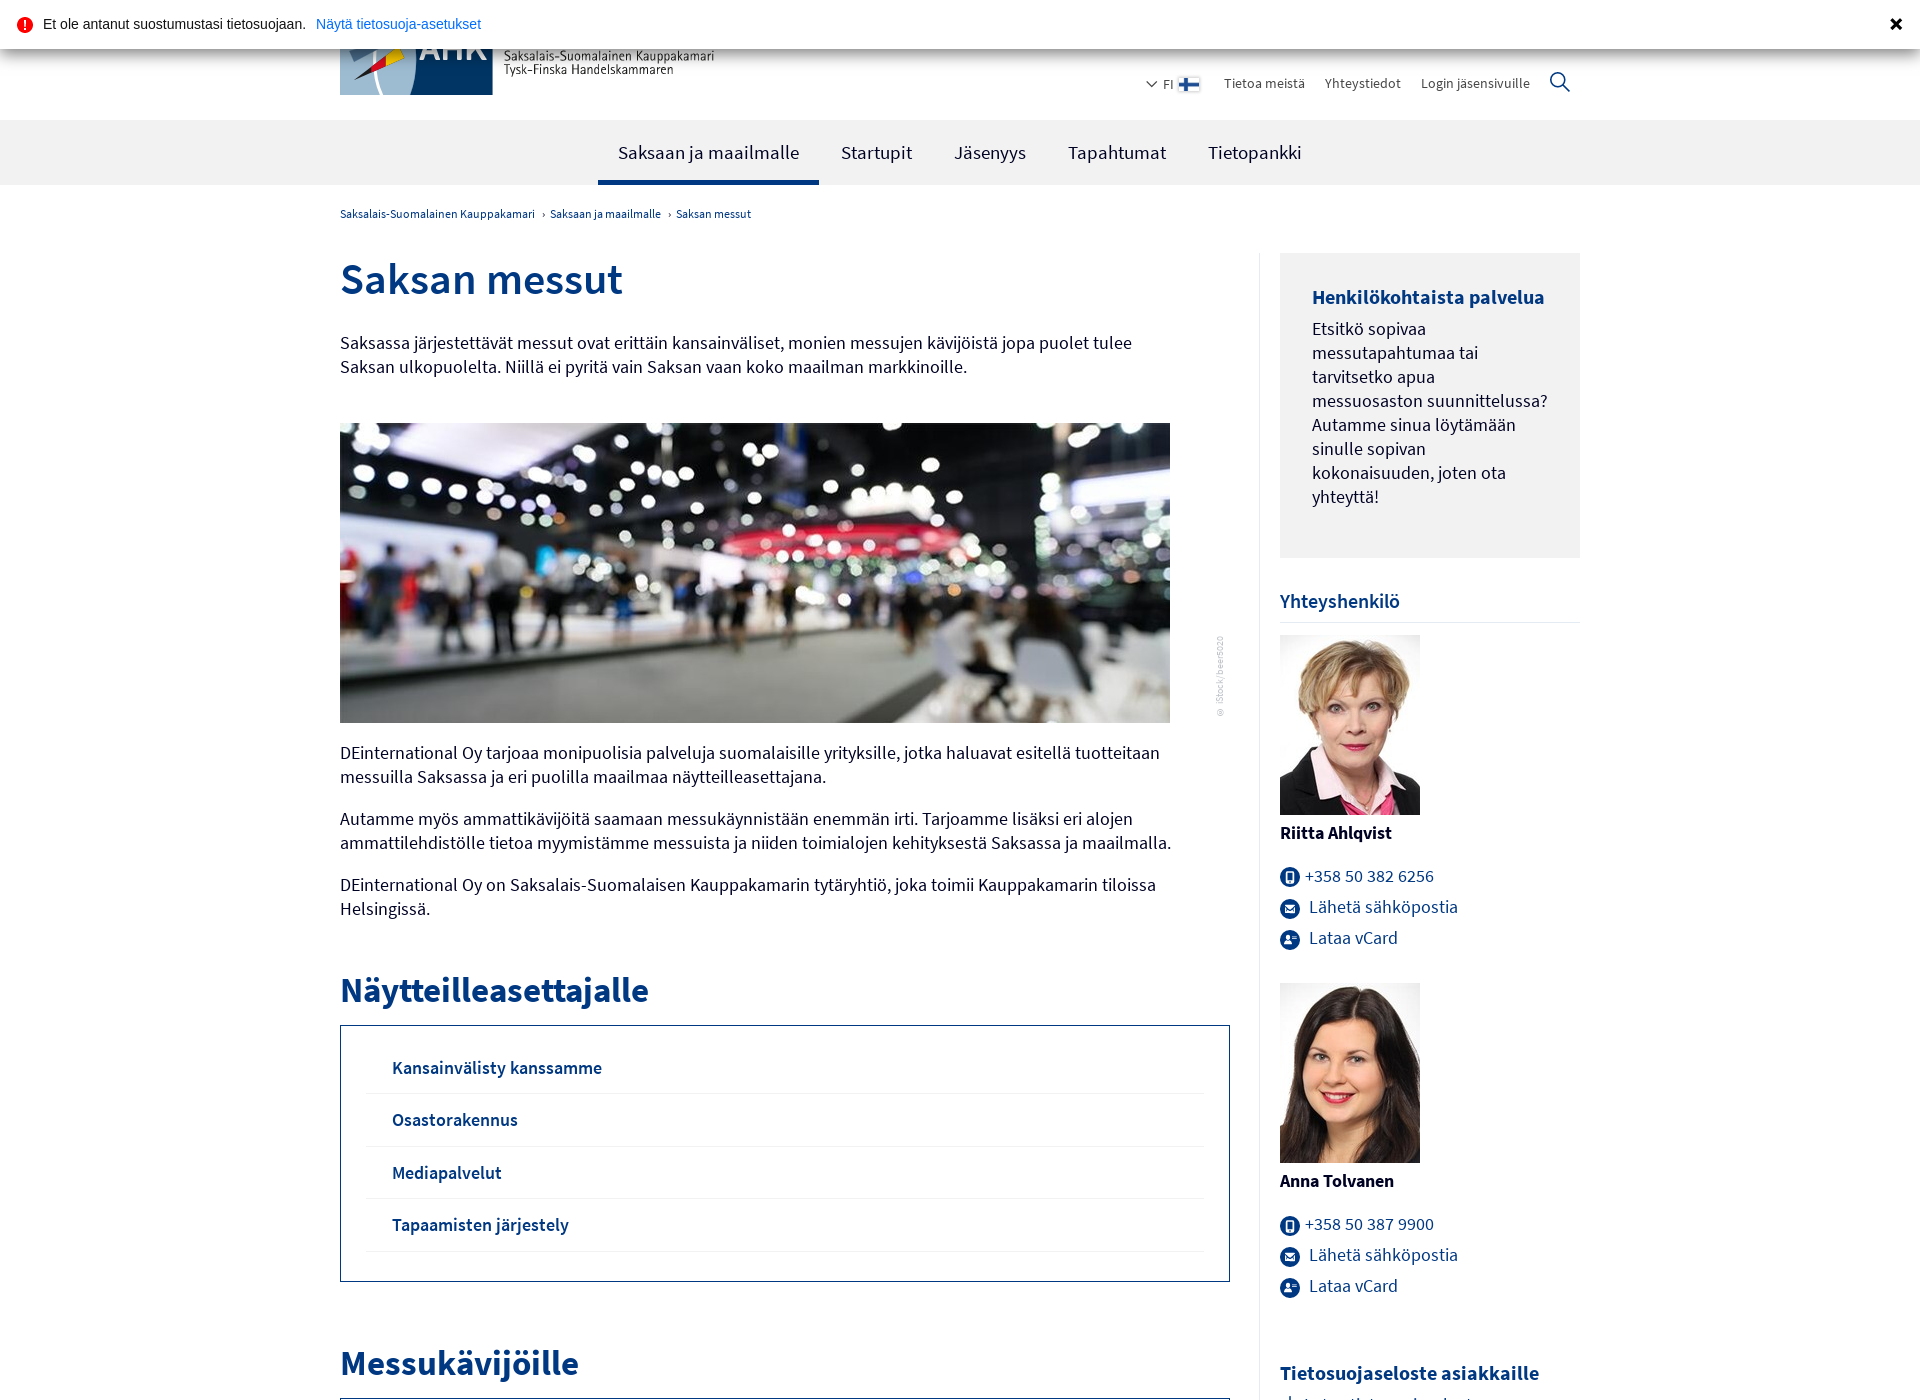 Skärmdump för saksanmessut.fi